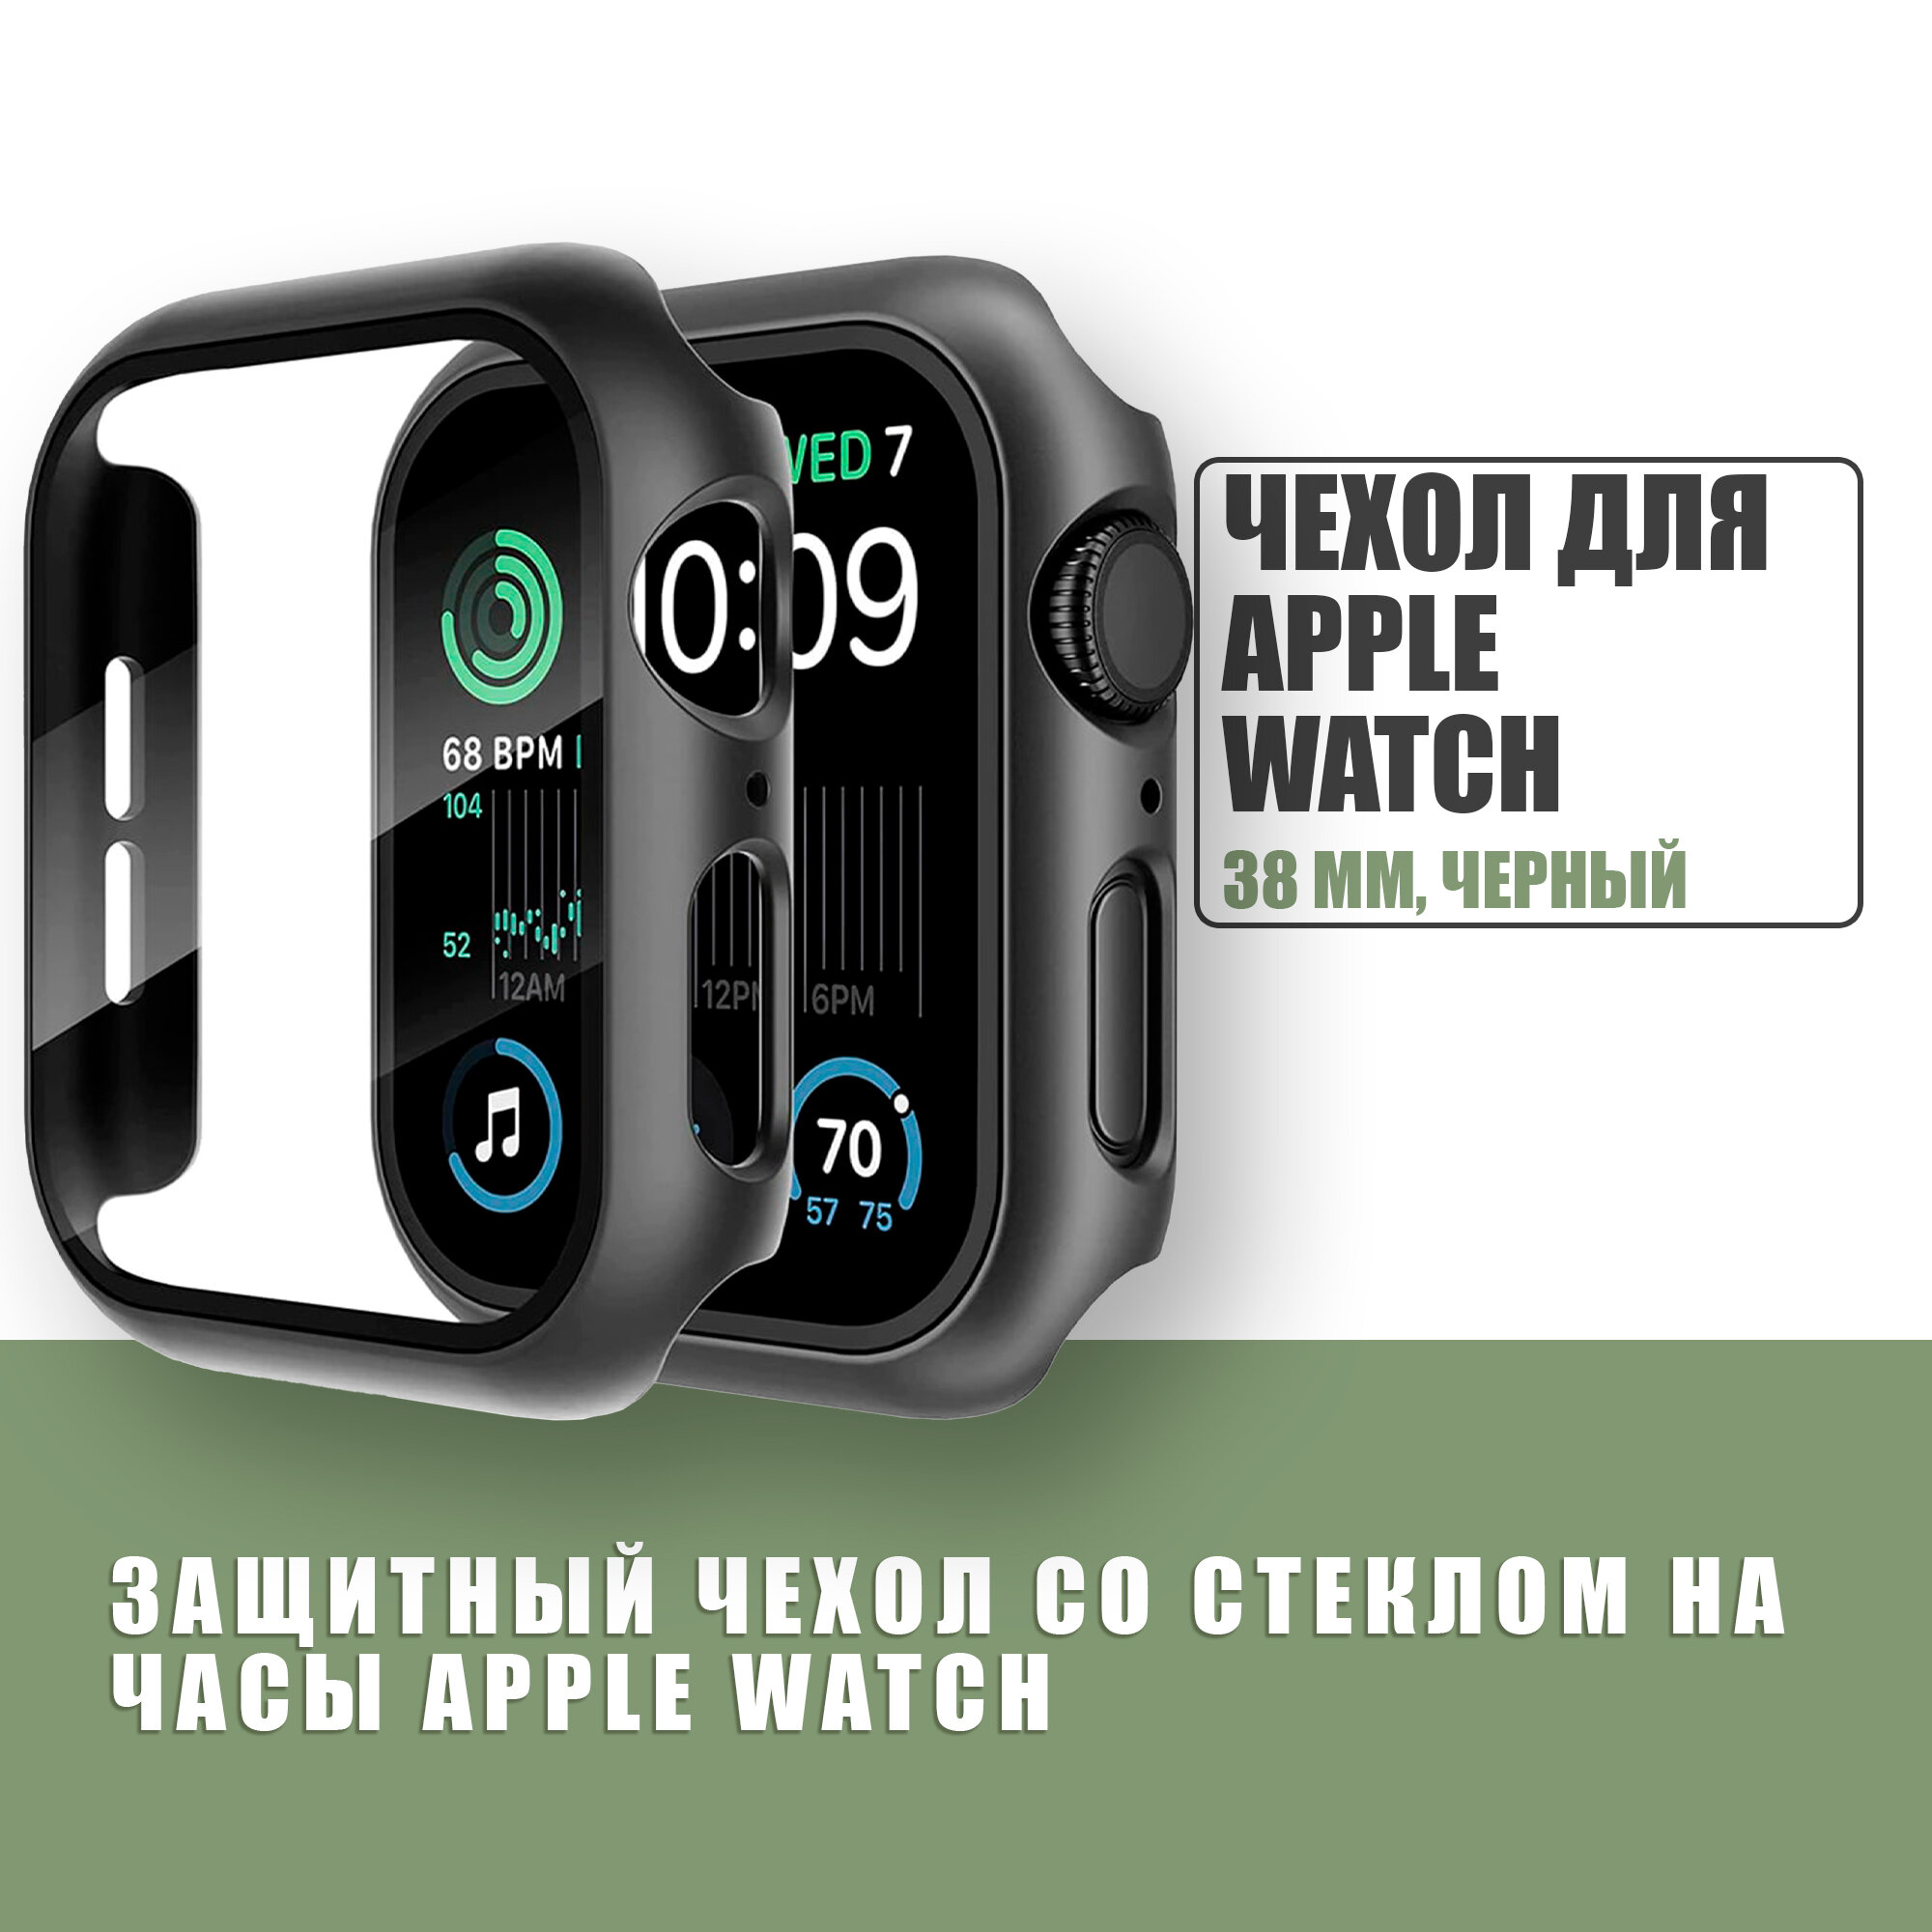 Защитный чехол стекло на часы Apple Watch 38 mm / Стекло на Апл Вотч 1, 2, 3, Черный